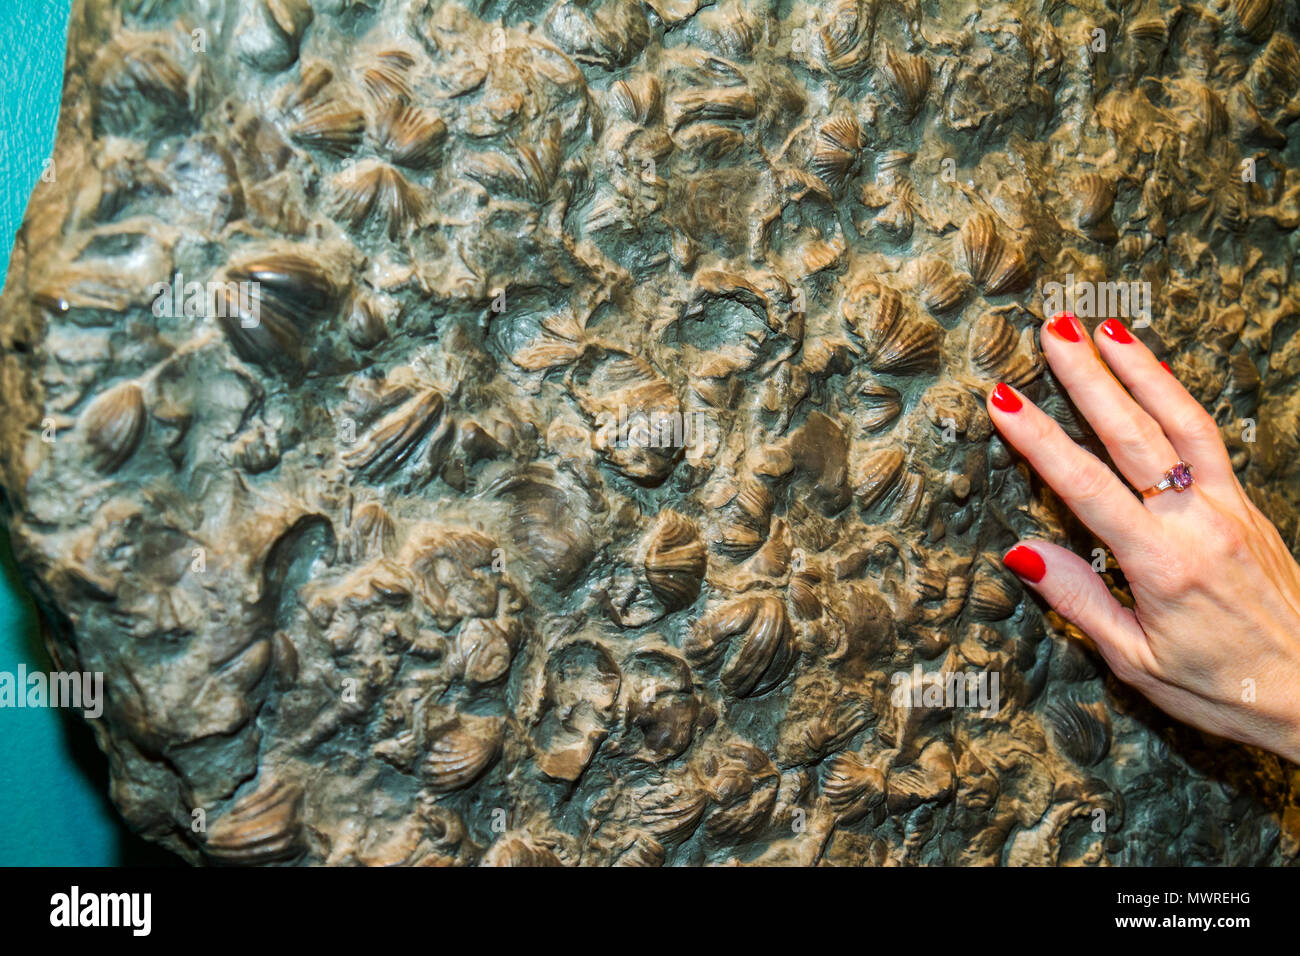 Washington DC, National Museum of Natural History, Sant Ocean Hall, Ausstellung Sammlungsprodukte, Fossil, Muscheln, Frauenhand, Hände, Hände Stockfoto